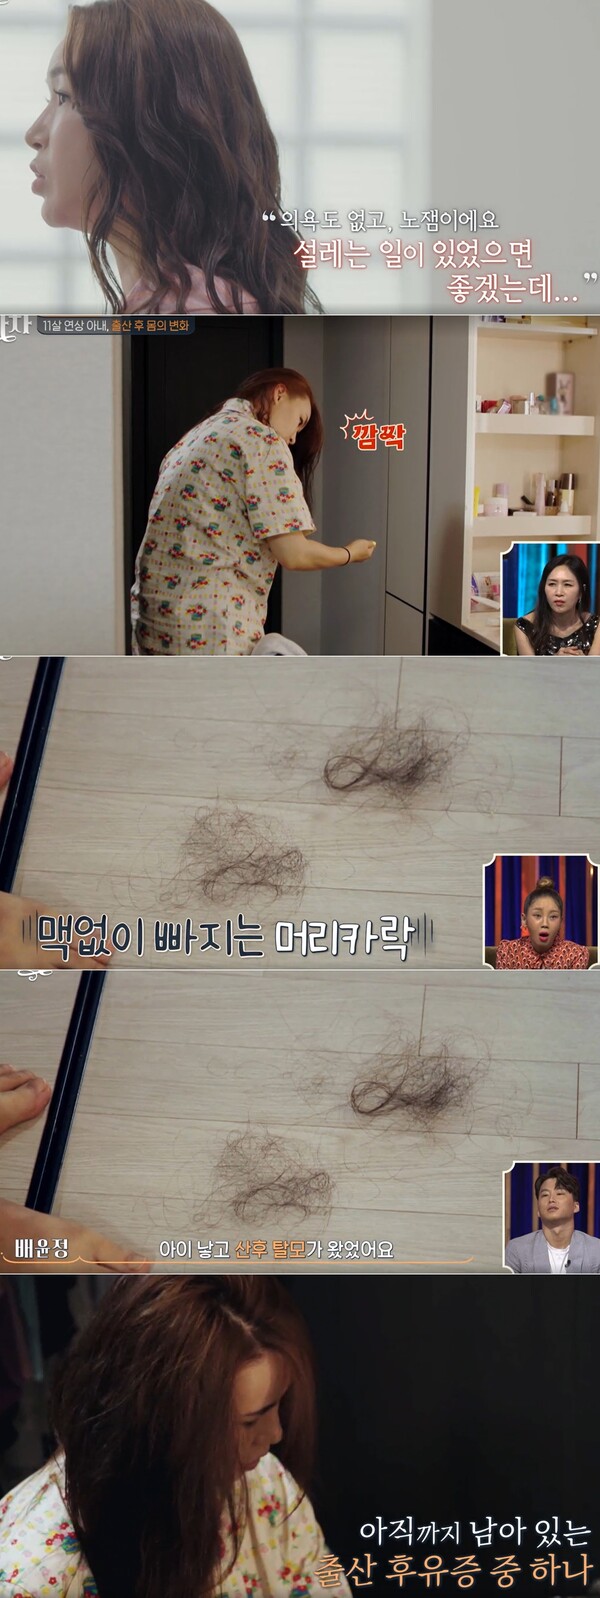 변화 1) 탈모 (출처 : tvN) 